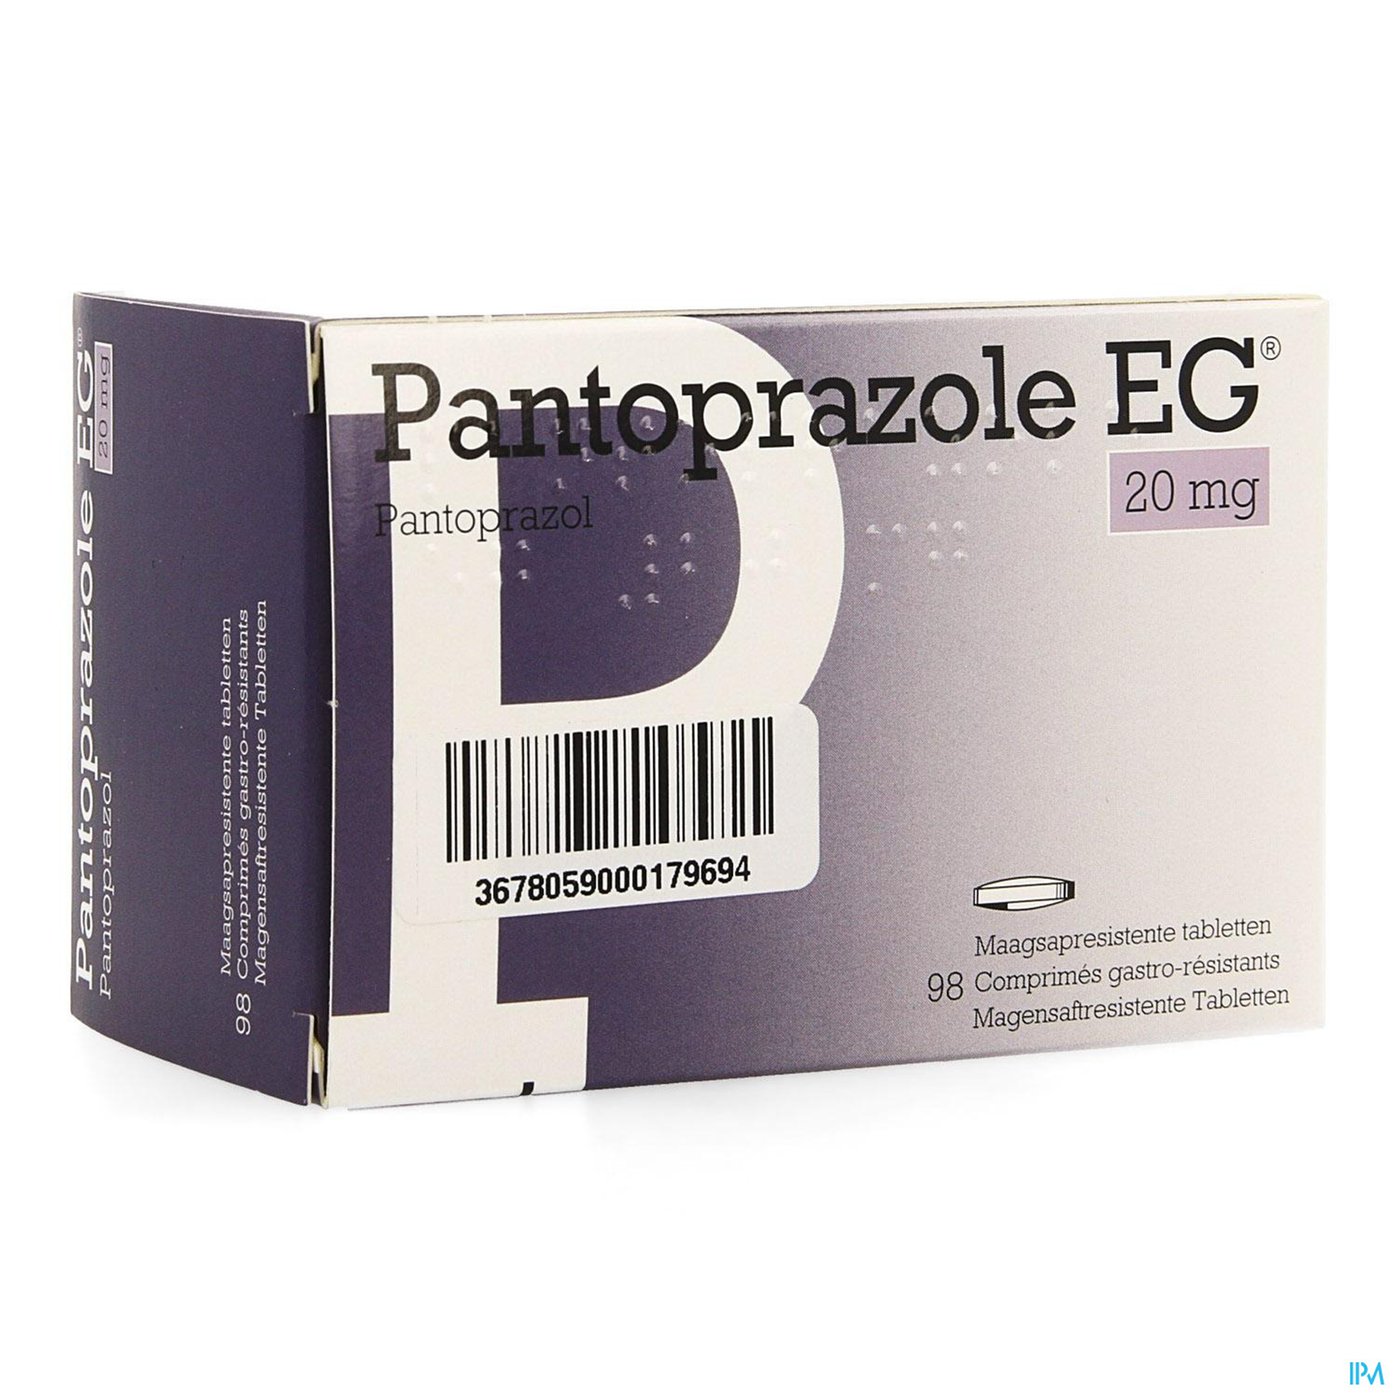 Pantoprazole Eg Pi Pharma 20mg Gast Tabl 98 Pip